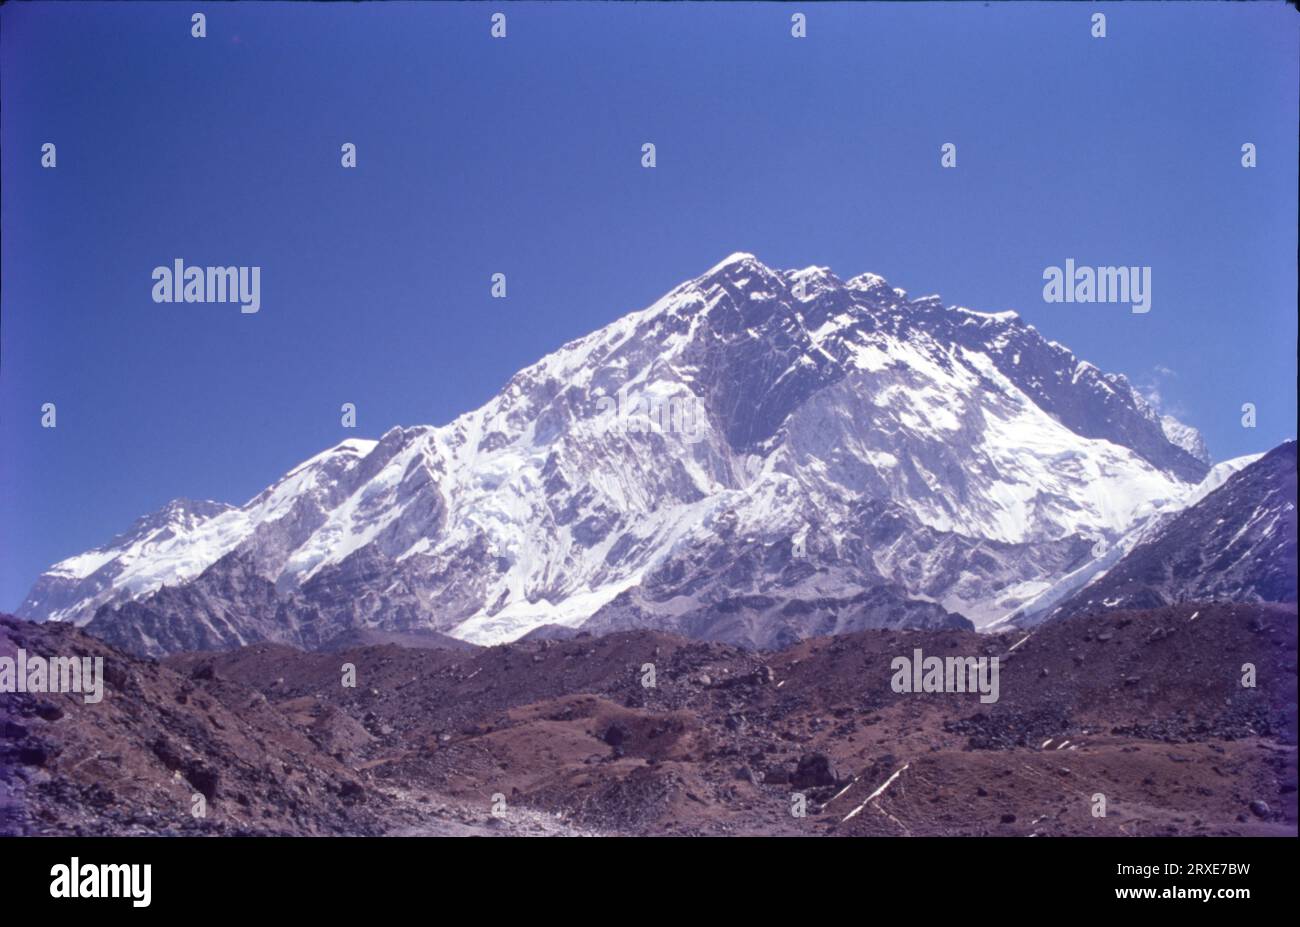 Nuptse oder Nubtse ist ein Berg in der Khumbu-Region des Mahalangur Himal im nepalesischen Himalaya. Es liegt zwei Kilometer westlich vom Mount Everest. Nubtse ist tibetisch für den „Westgipfel“, da es das westliche Segment des Massivs Lhotse-Nubtse ist. Stockfoto